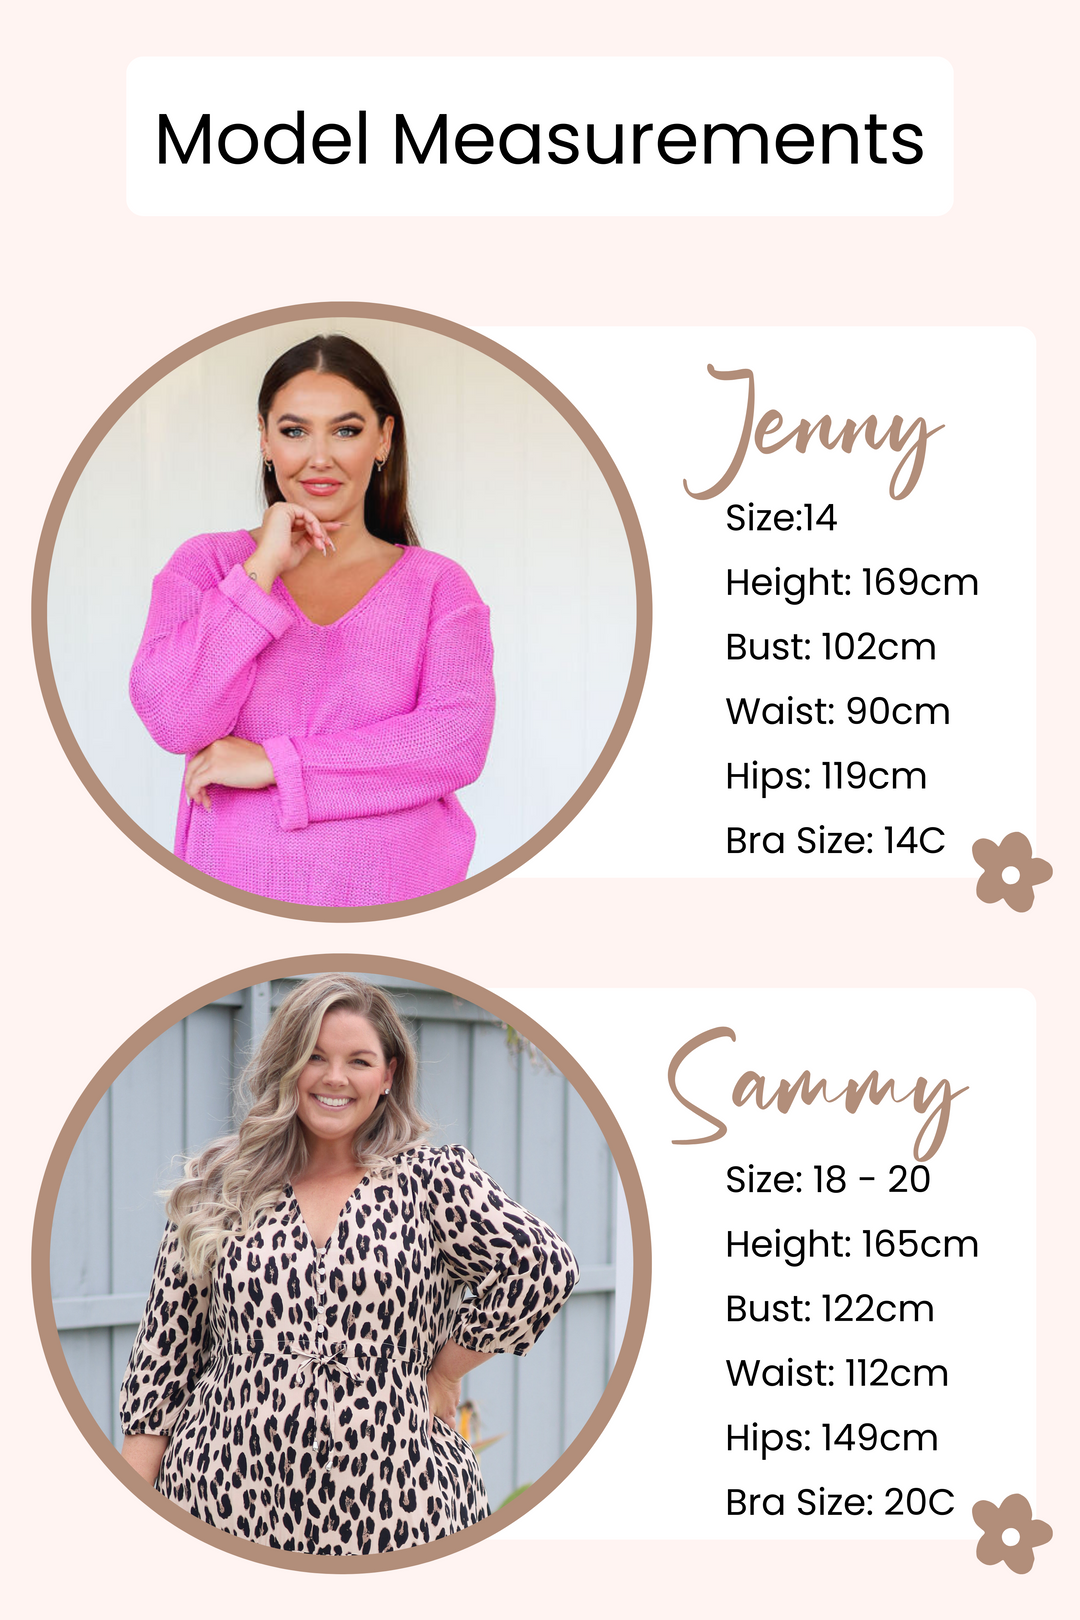 Women's Online Clothing Boutique Australia - Maxi Dresses - Knits - Jeans - Plus Size Fashion - Daisy's Closet Model Measurement Guide